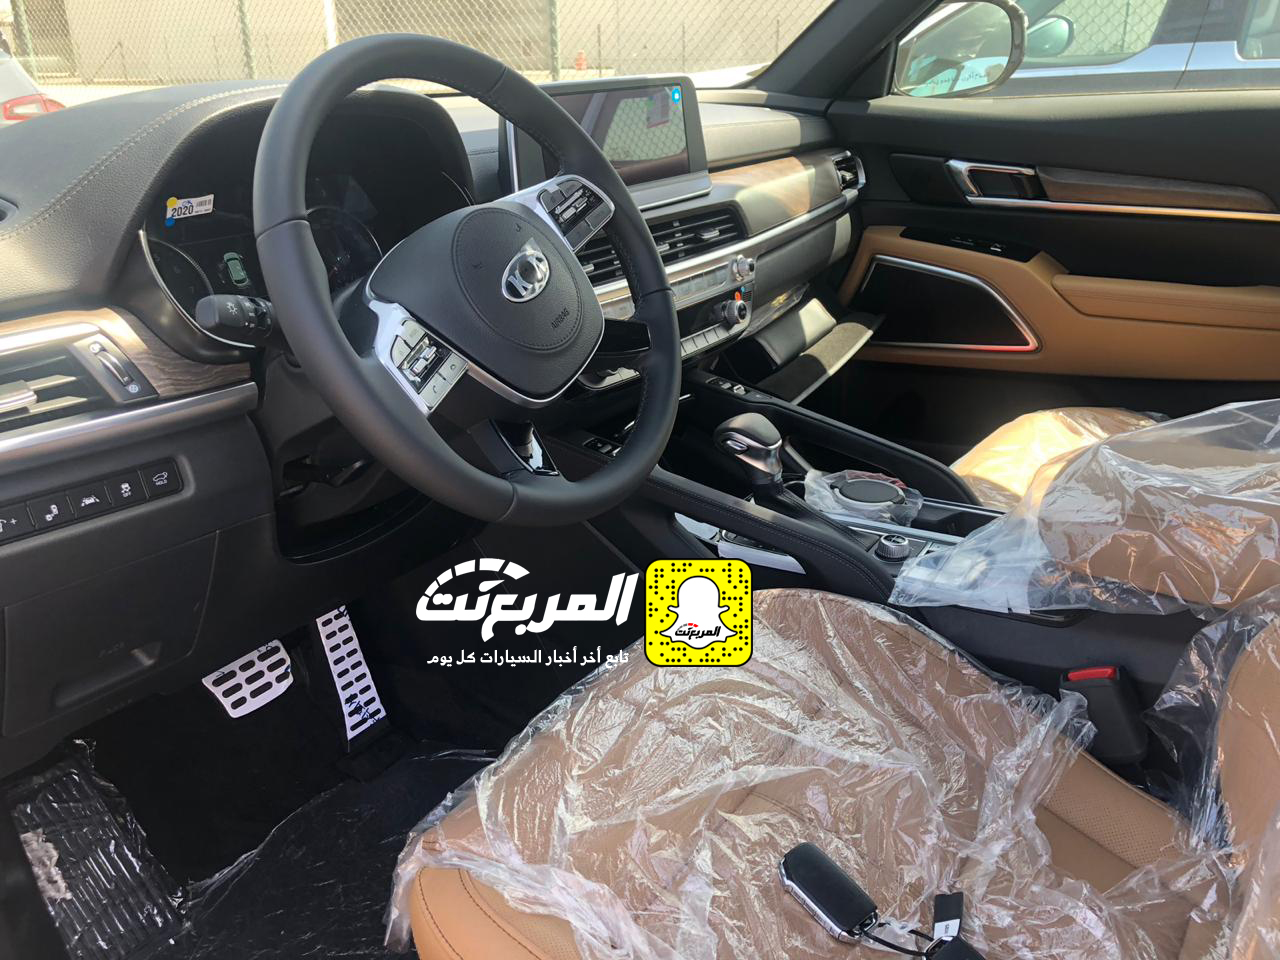 "بالصور" وصول كيا تيلورايد 2020 الجديدة الى السعودية اكبر SUV من كيا + موعد البيع الرسمي 6